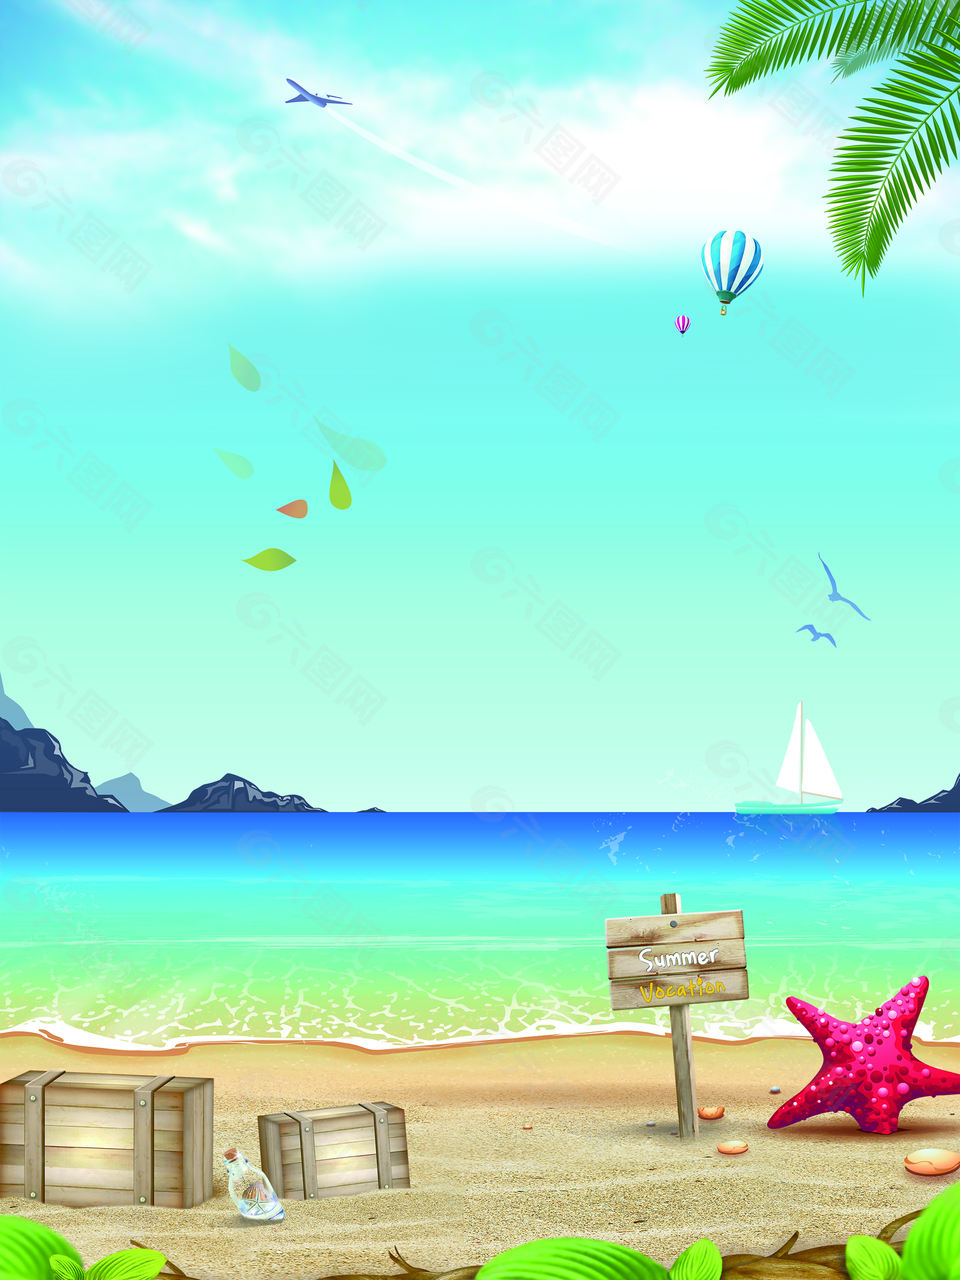 蓝天白云风景海滩沙滩旅游夏日背景素材背景素材免费下载 图片编号 六图网